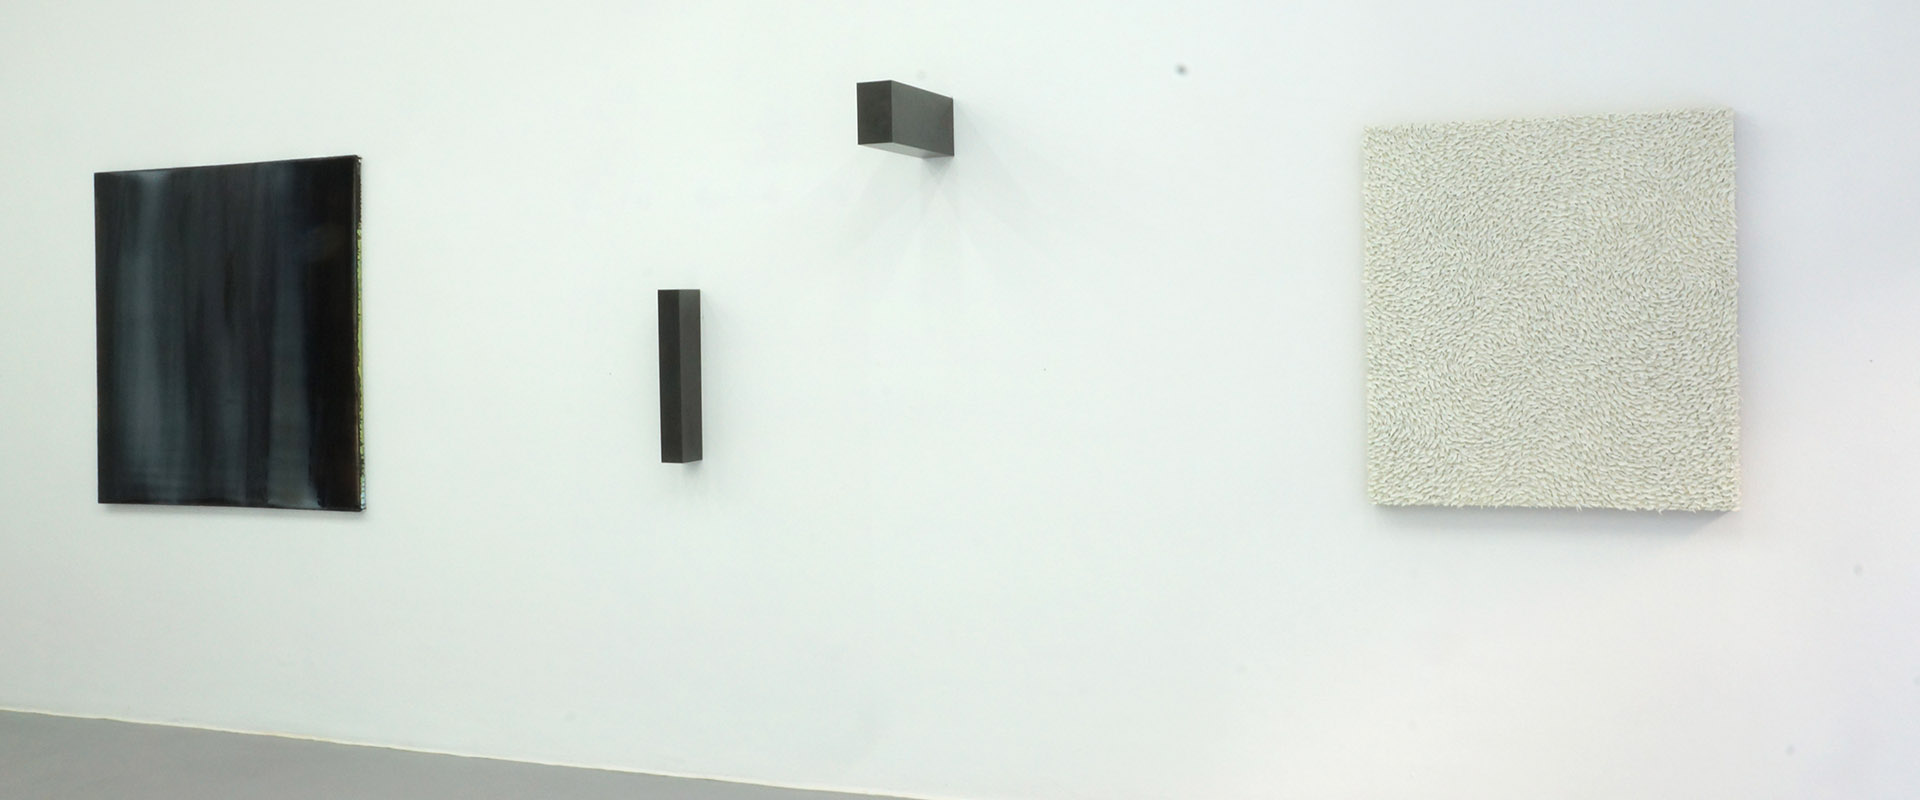 Ausstellungsansicht "Black & White II", Galerie Renate Bender 2015